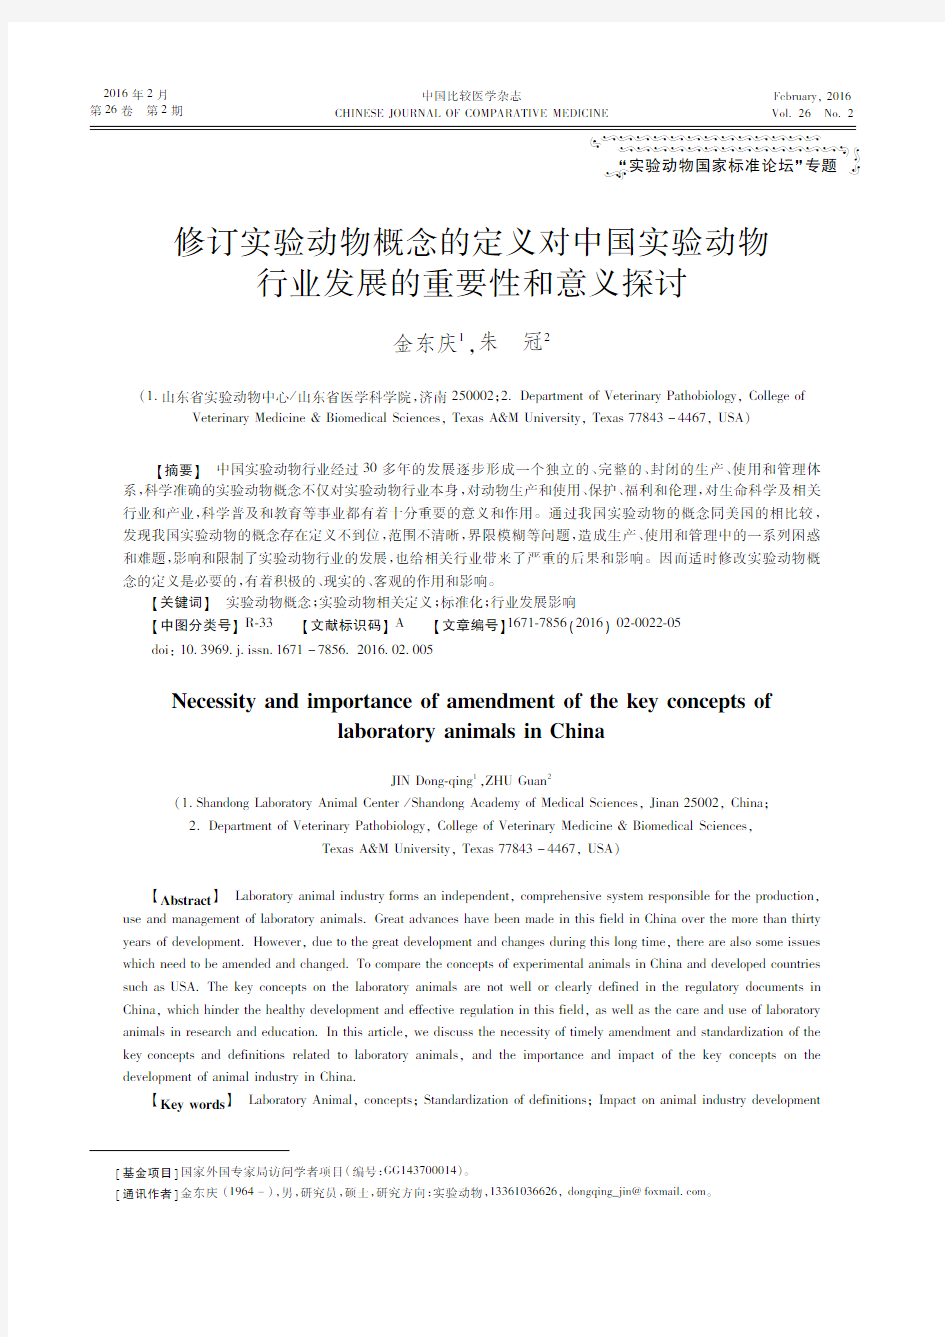 修订实验动物概念的定义对中国实验动物行业发展的